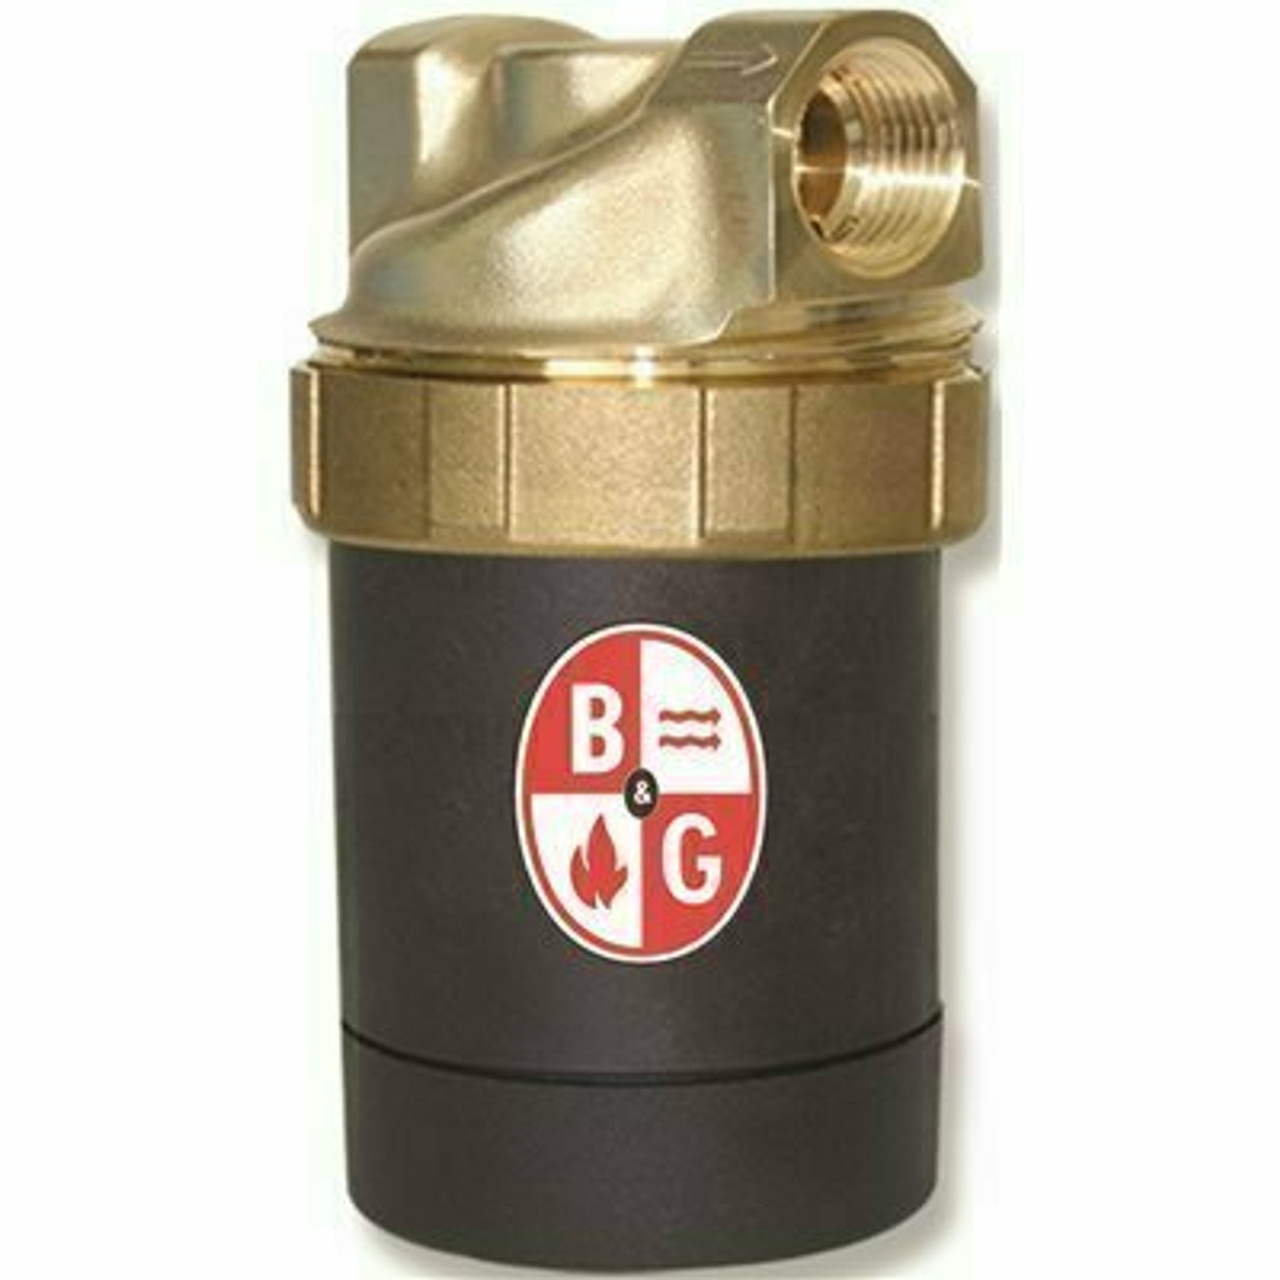 Bell & Gossett Circulator Pump Lead-Free Brass - 109239